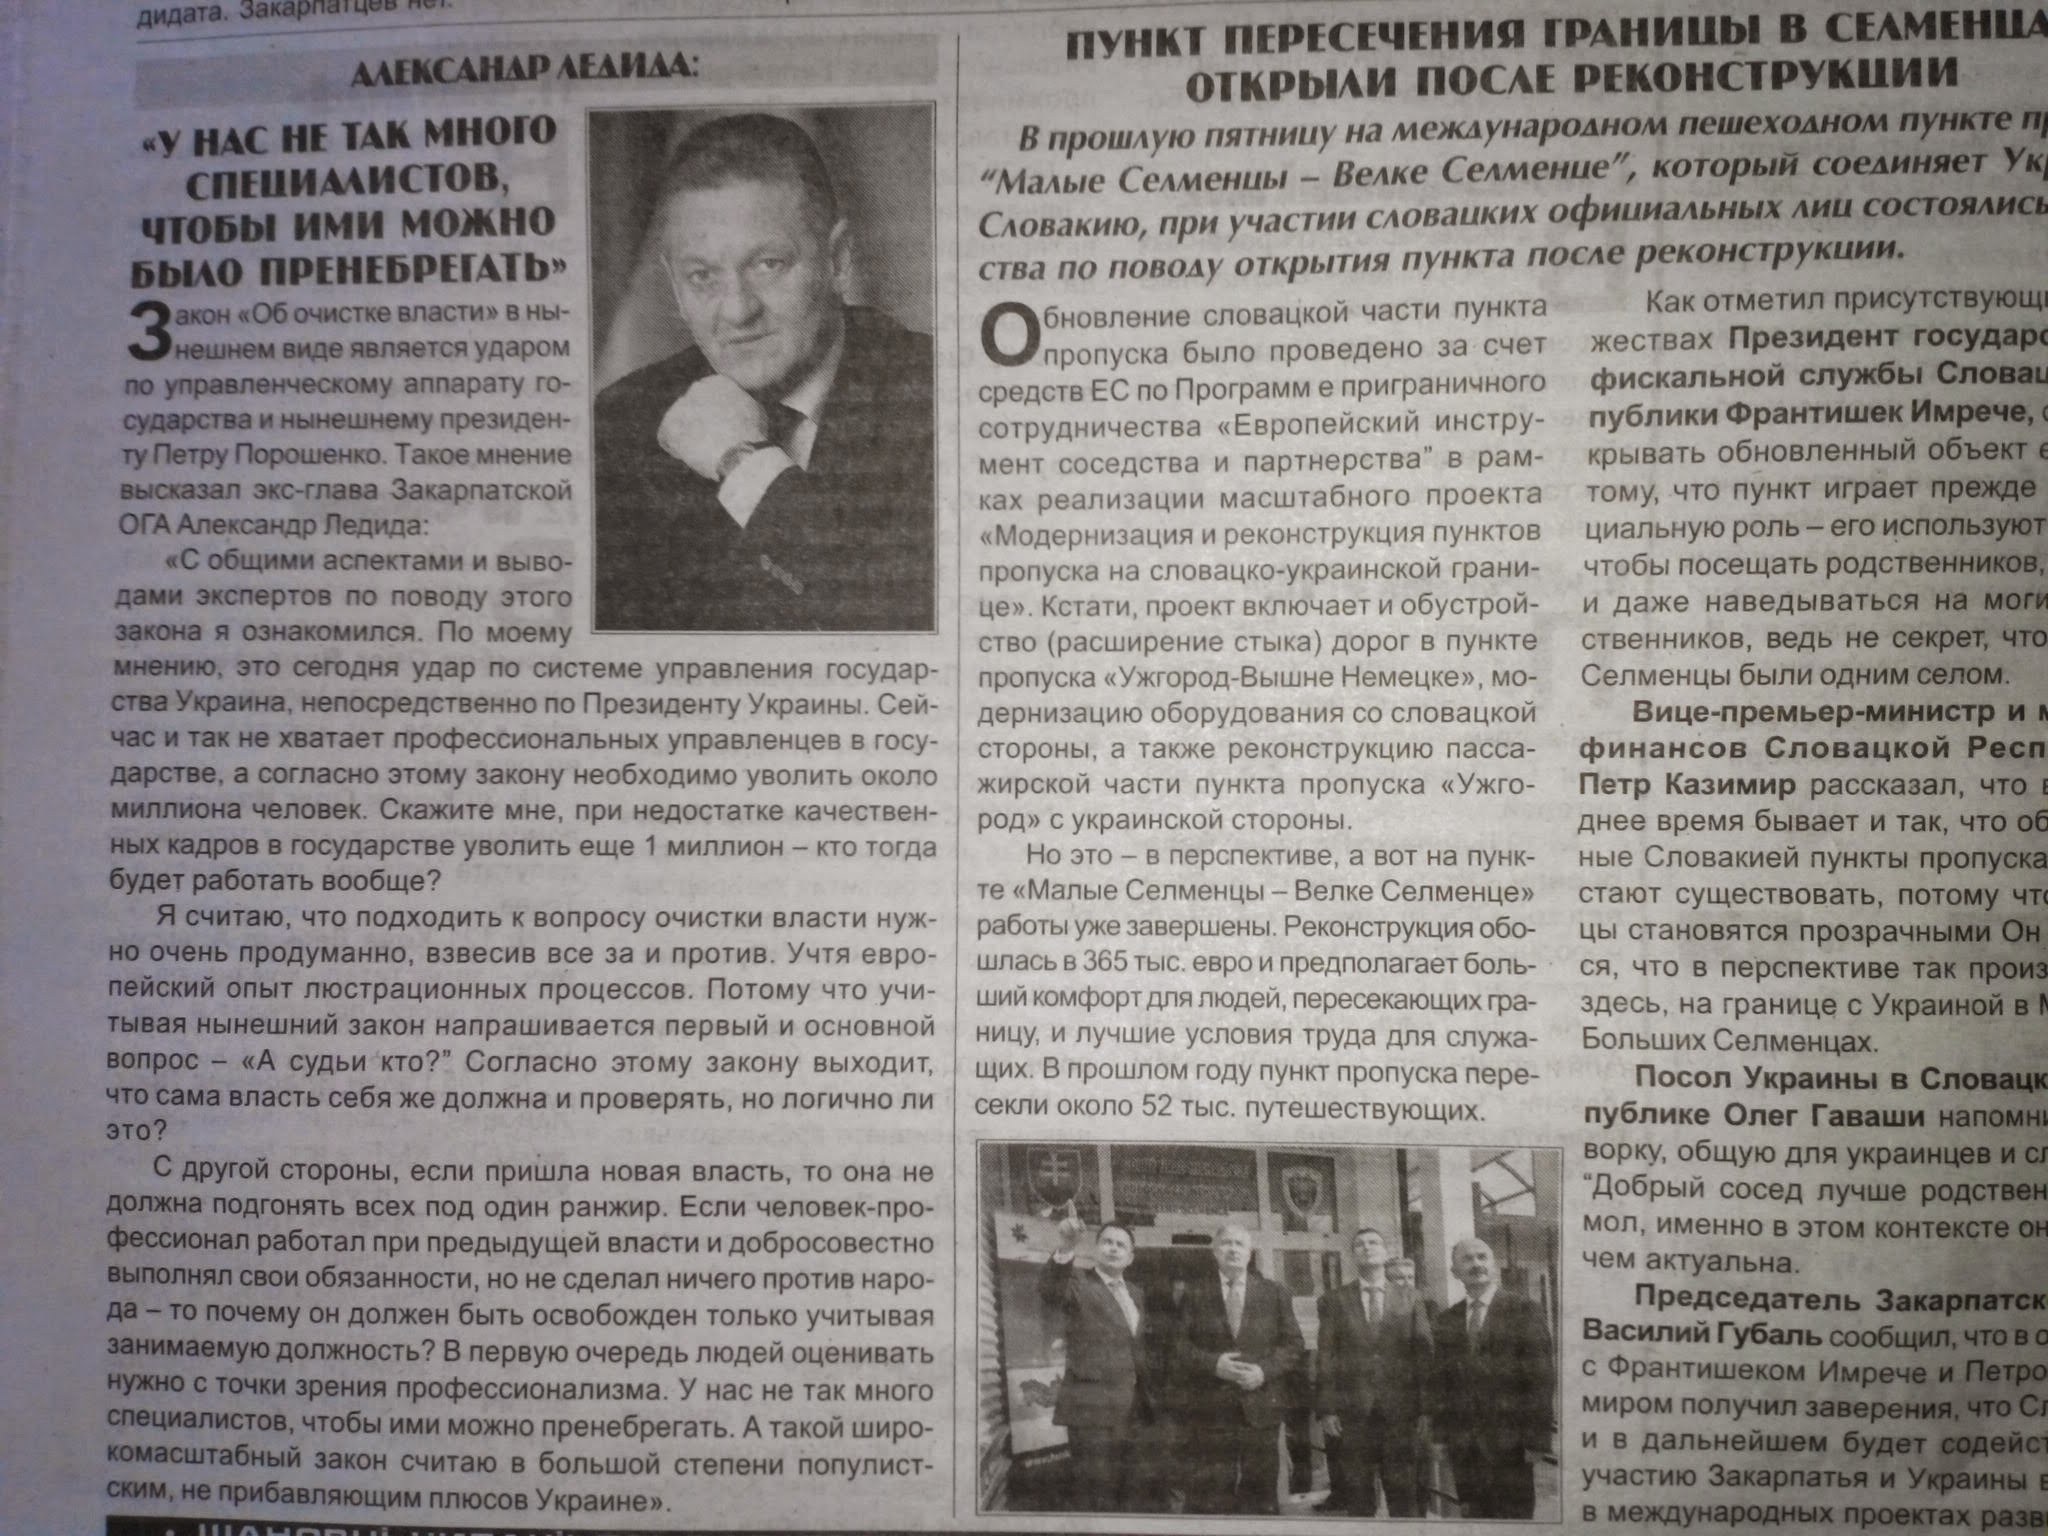 Закарпатські газети на замовлення кандидатів у нардепи масово розміщають приховану політичну рекламу